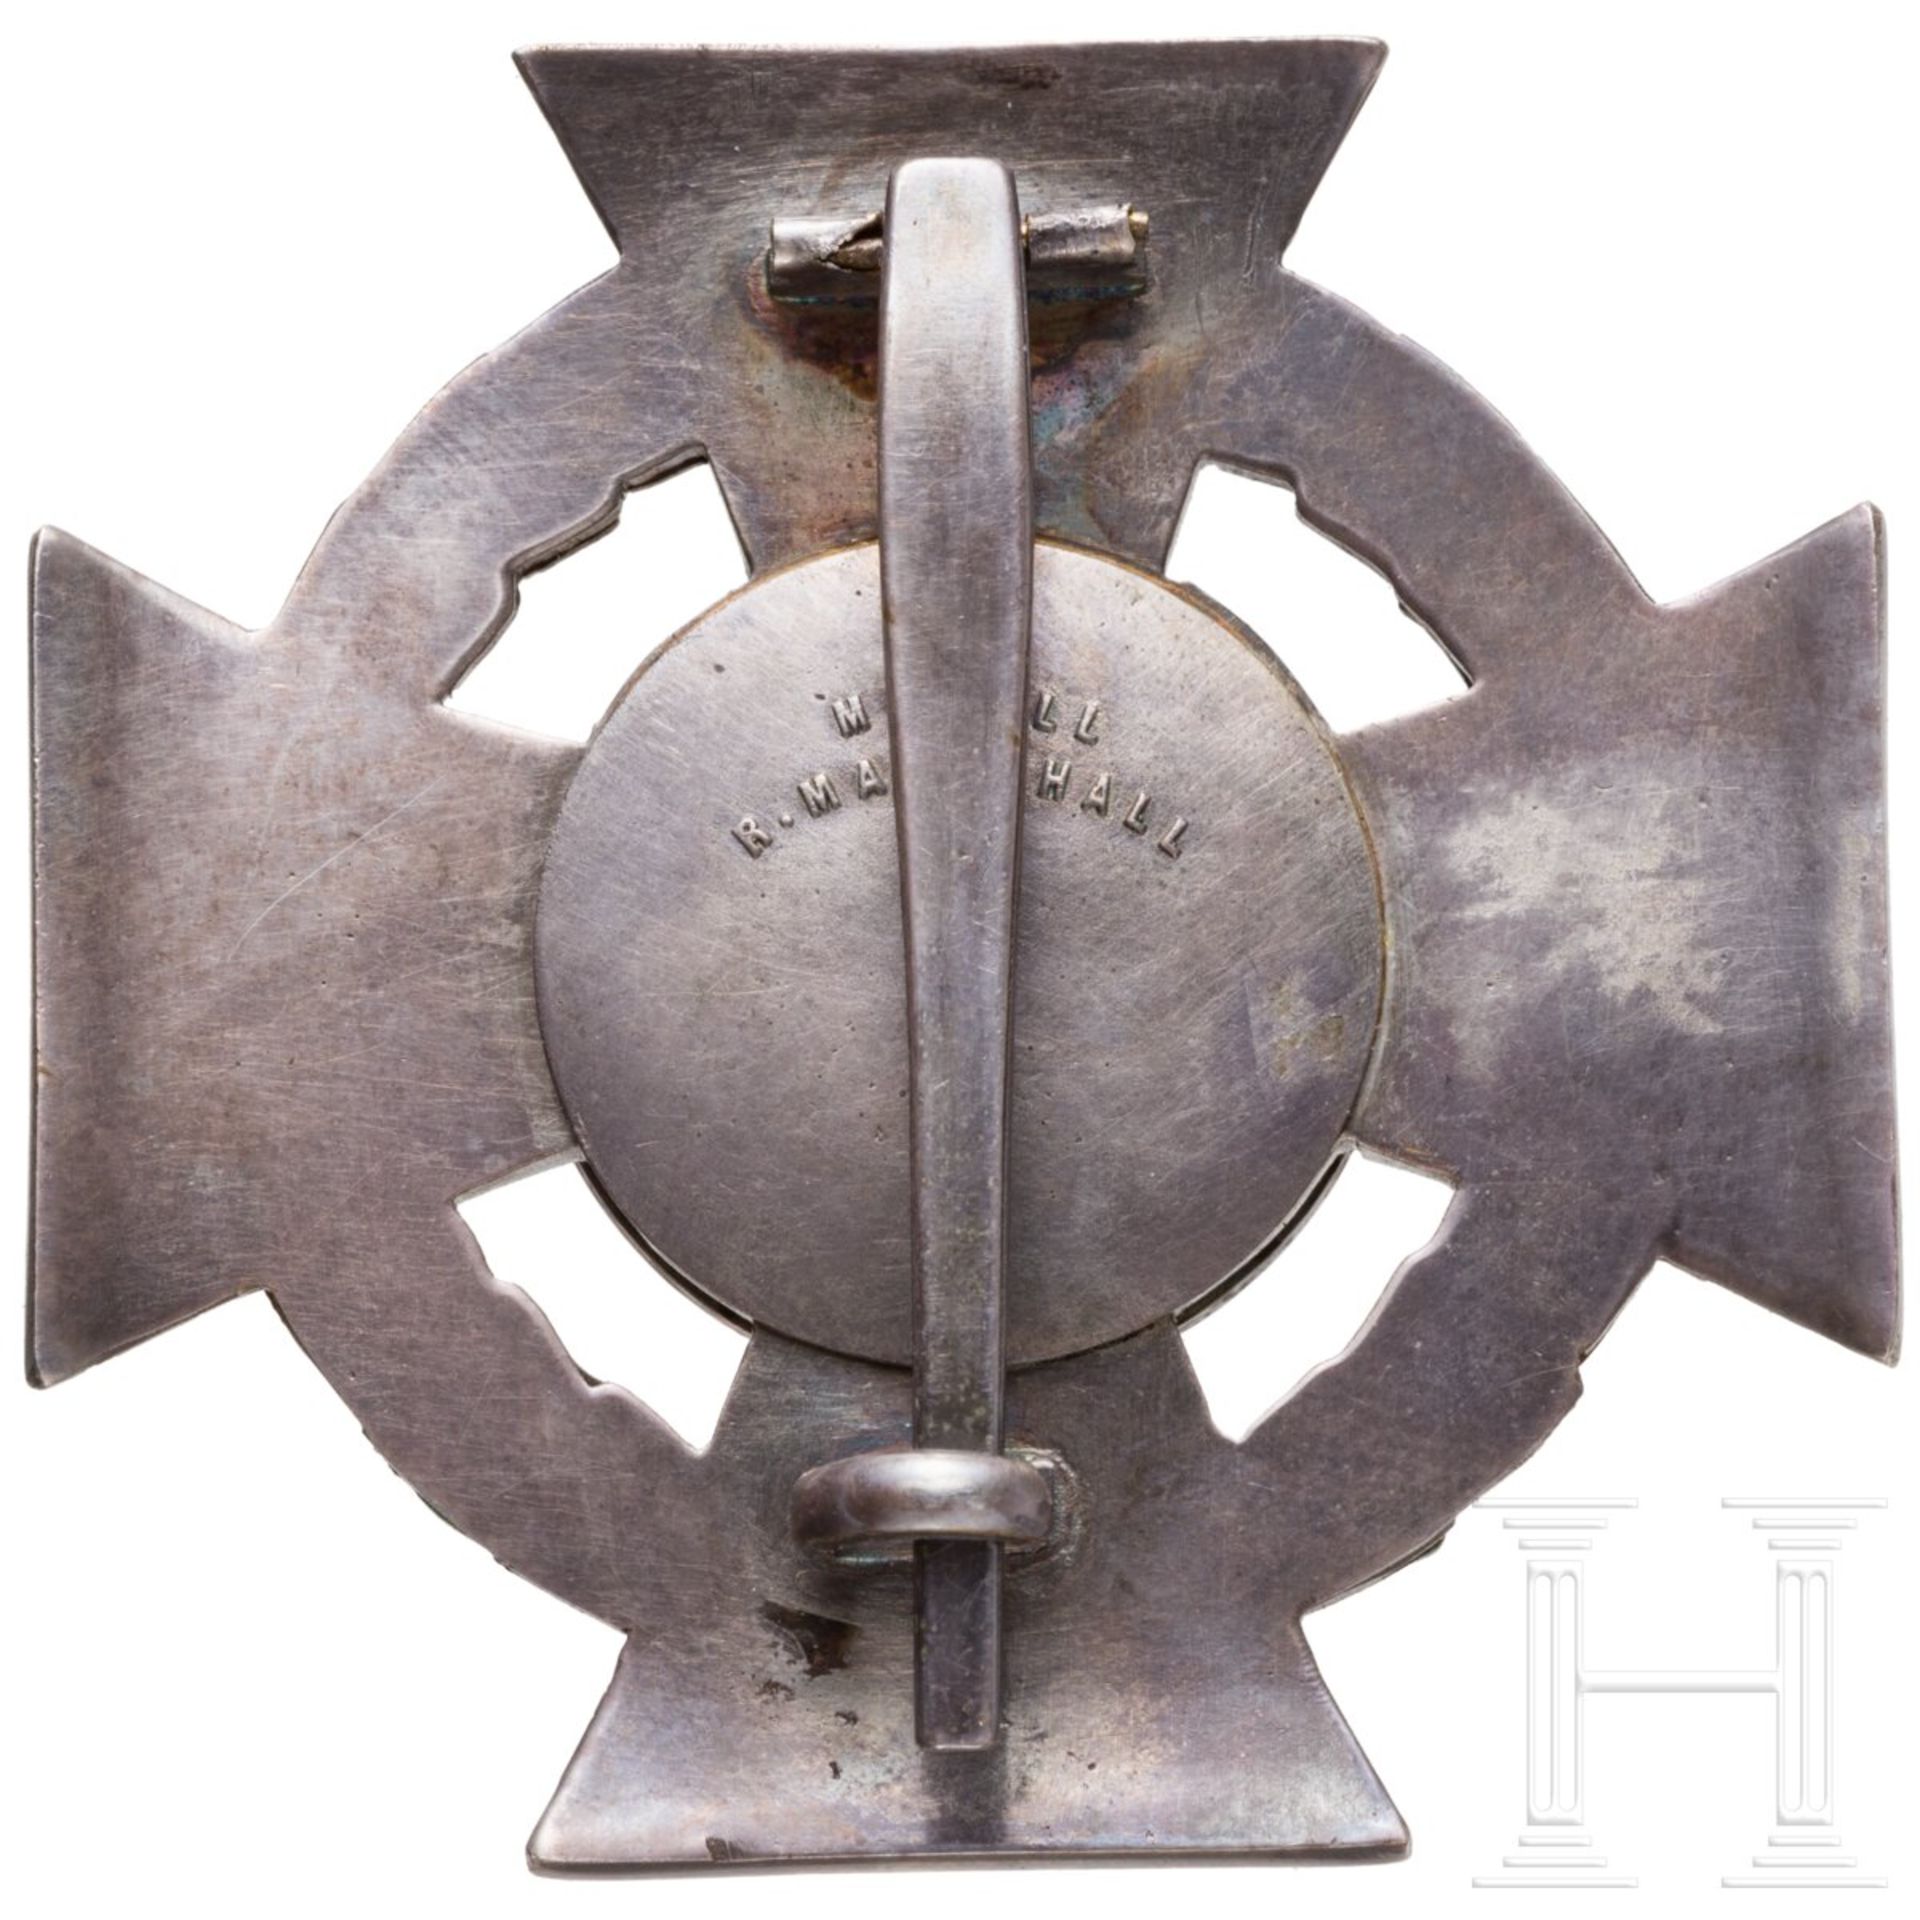 Militärverdienstkreuz 1. Klasse - Image 2 of 4